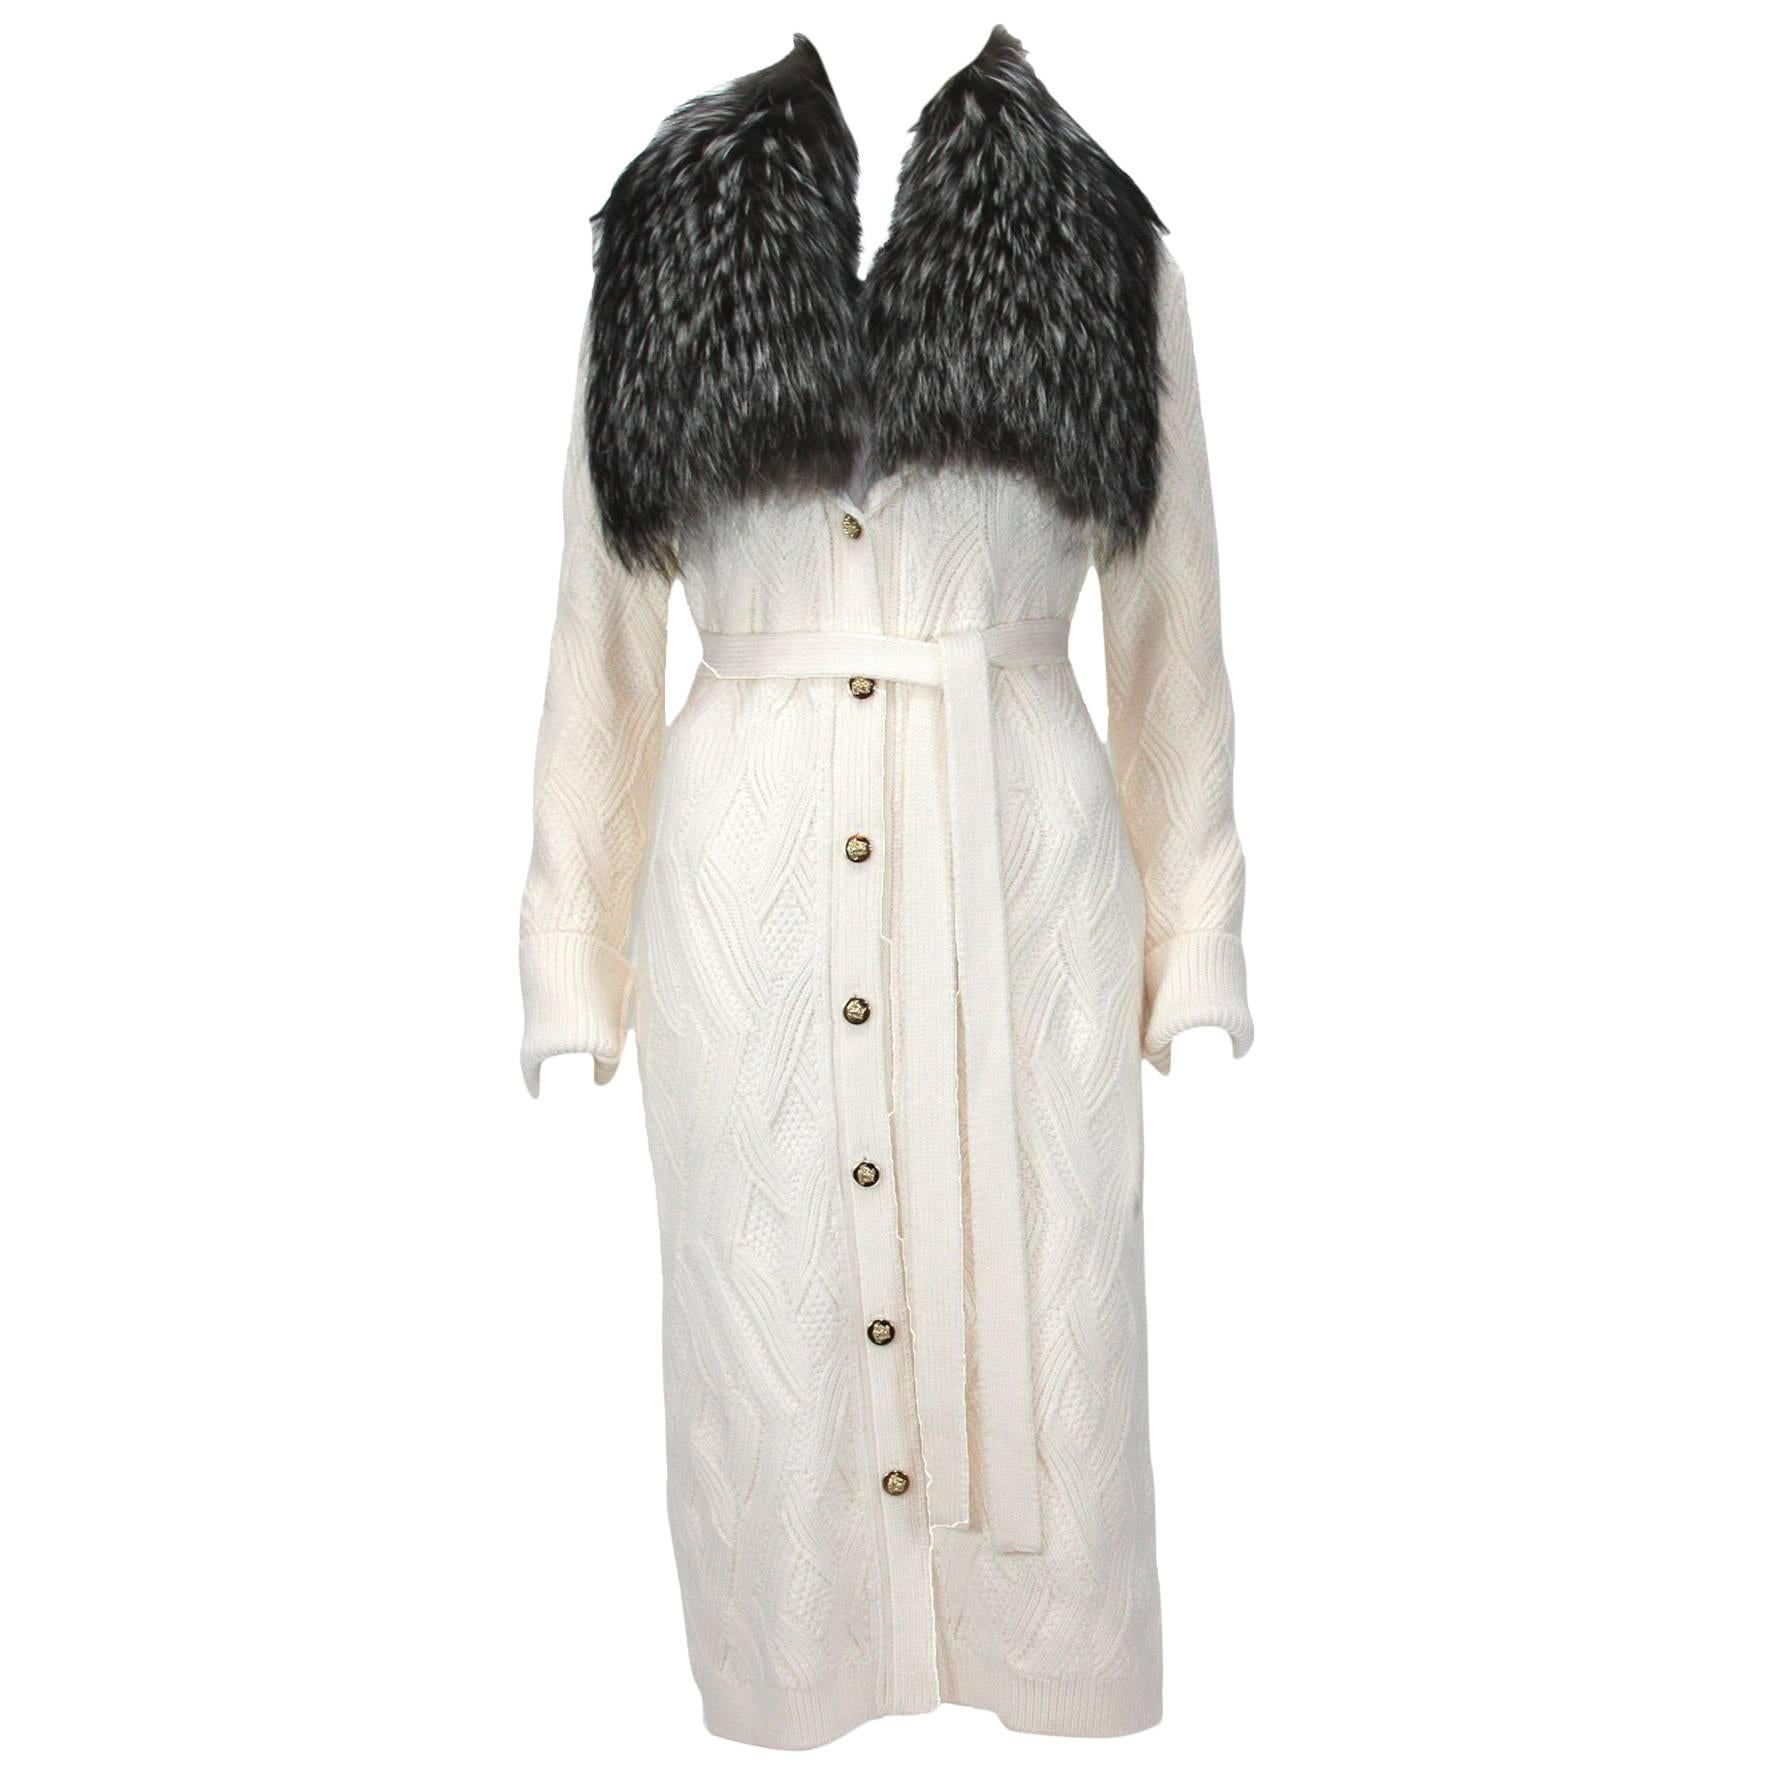 Versace - Manteau cardigan en laine crème avec col en renard argenté amovible, 40